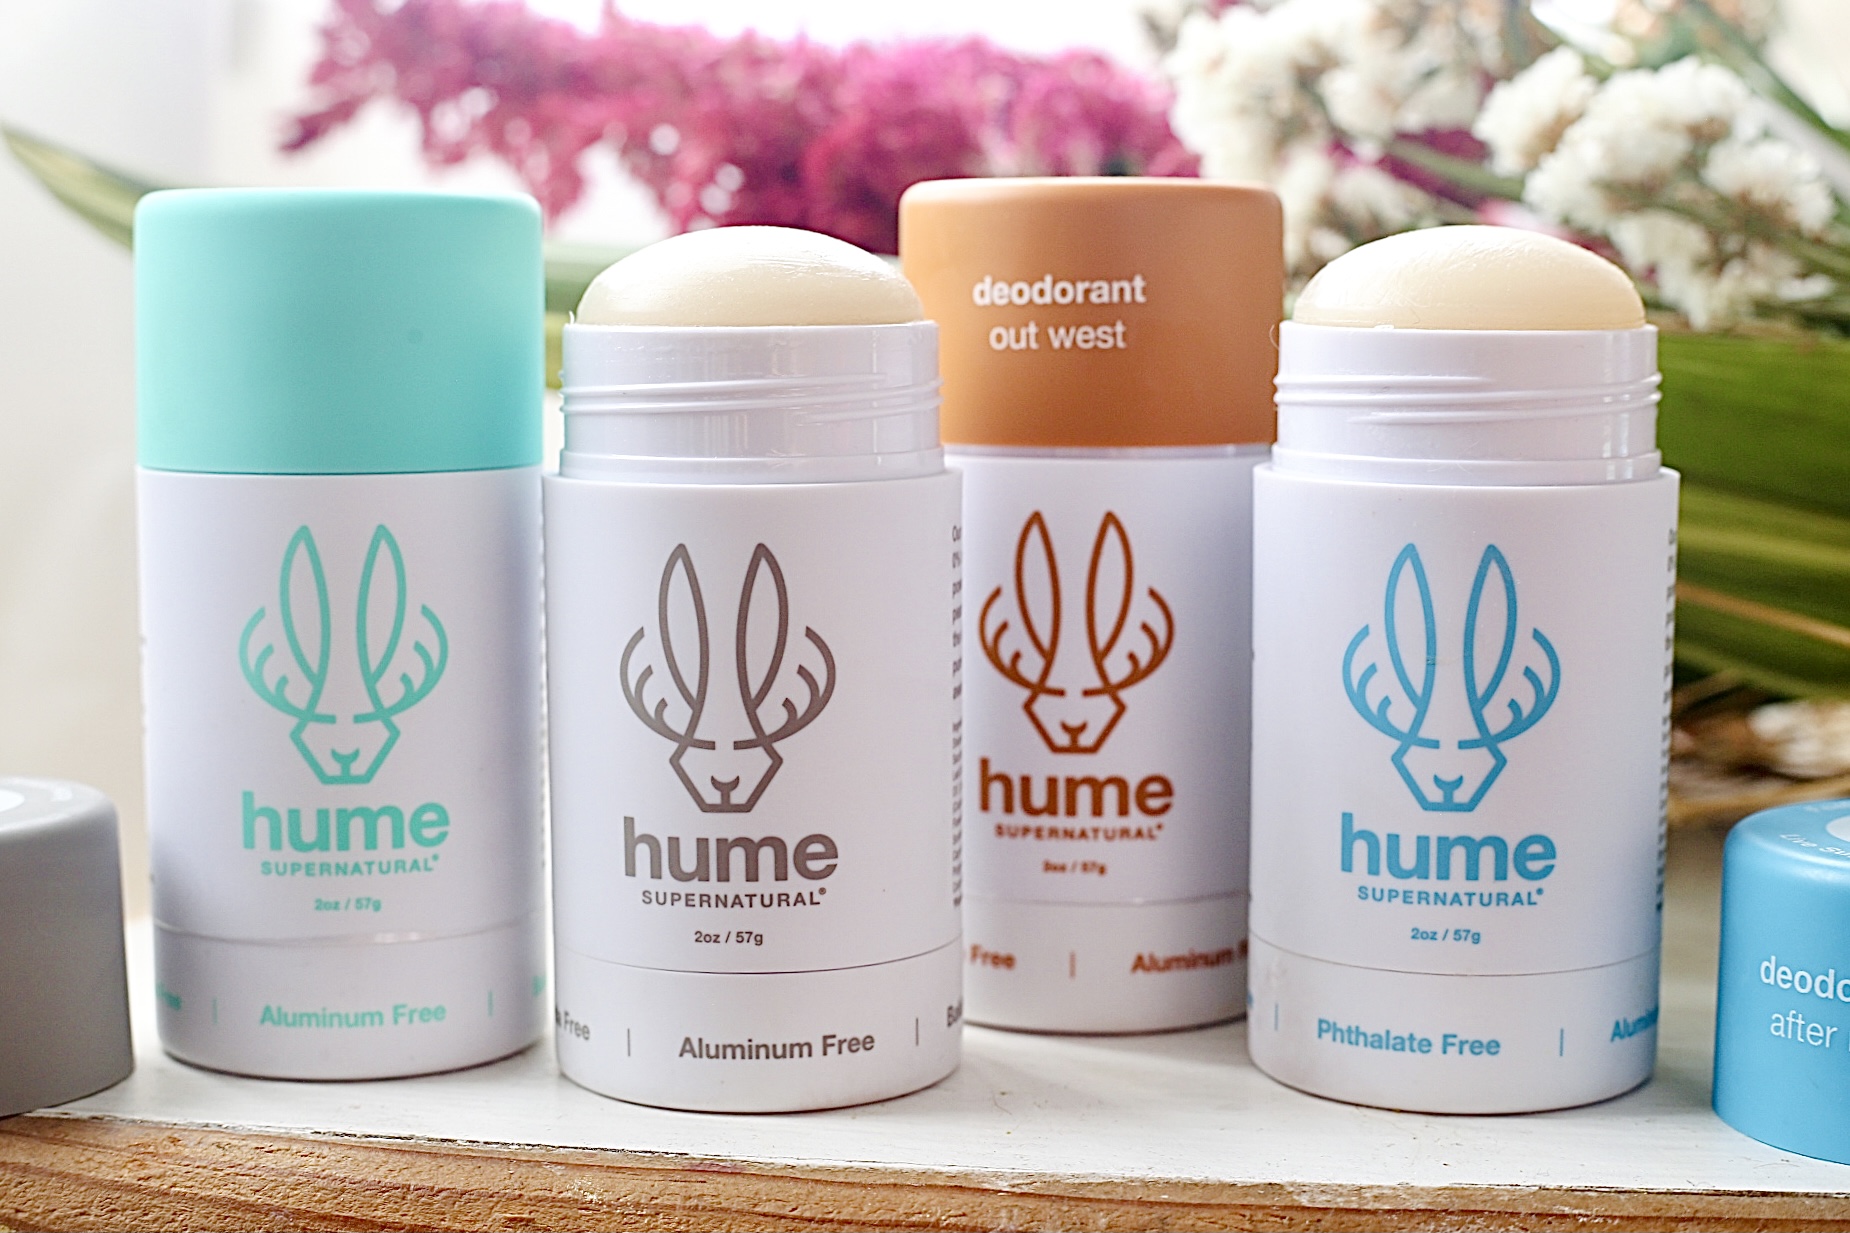 Hume supernatural deodorant